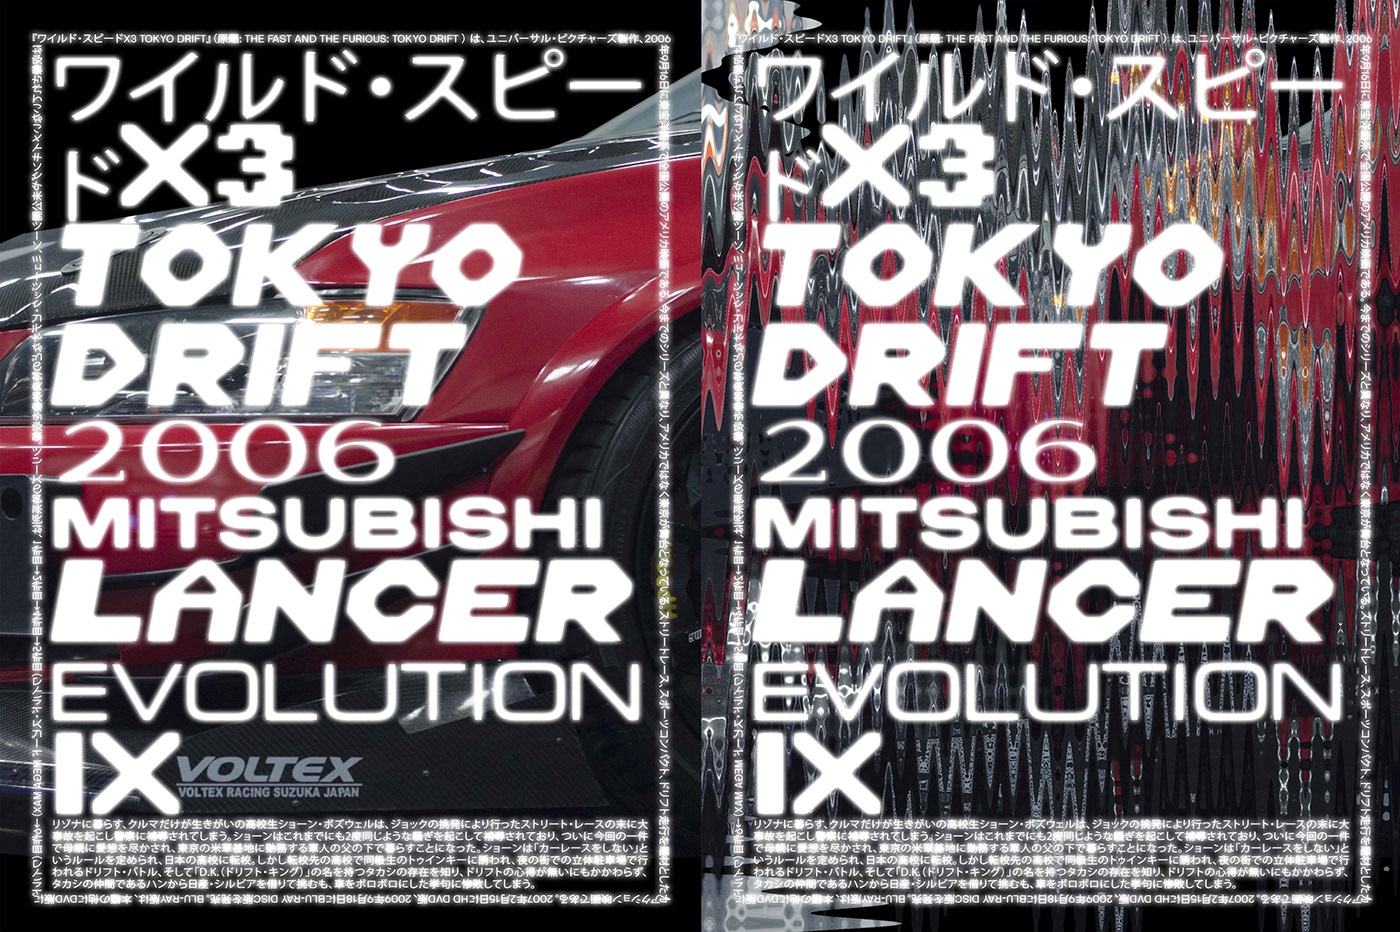 ワイルド スピードx3 Tokyo Drift Poster Series On Behance